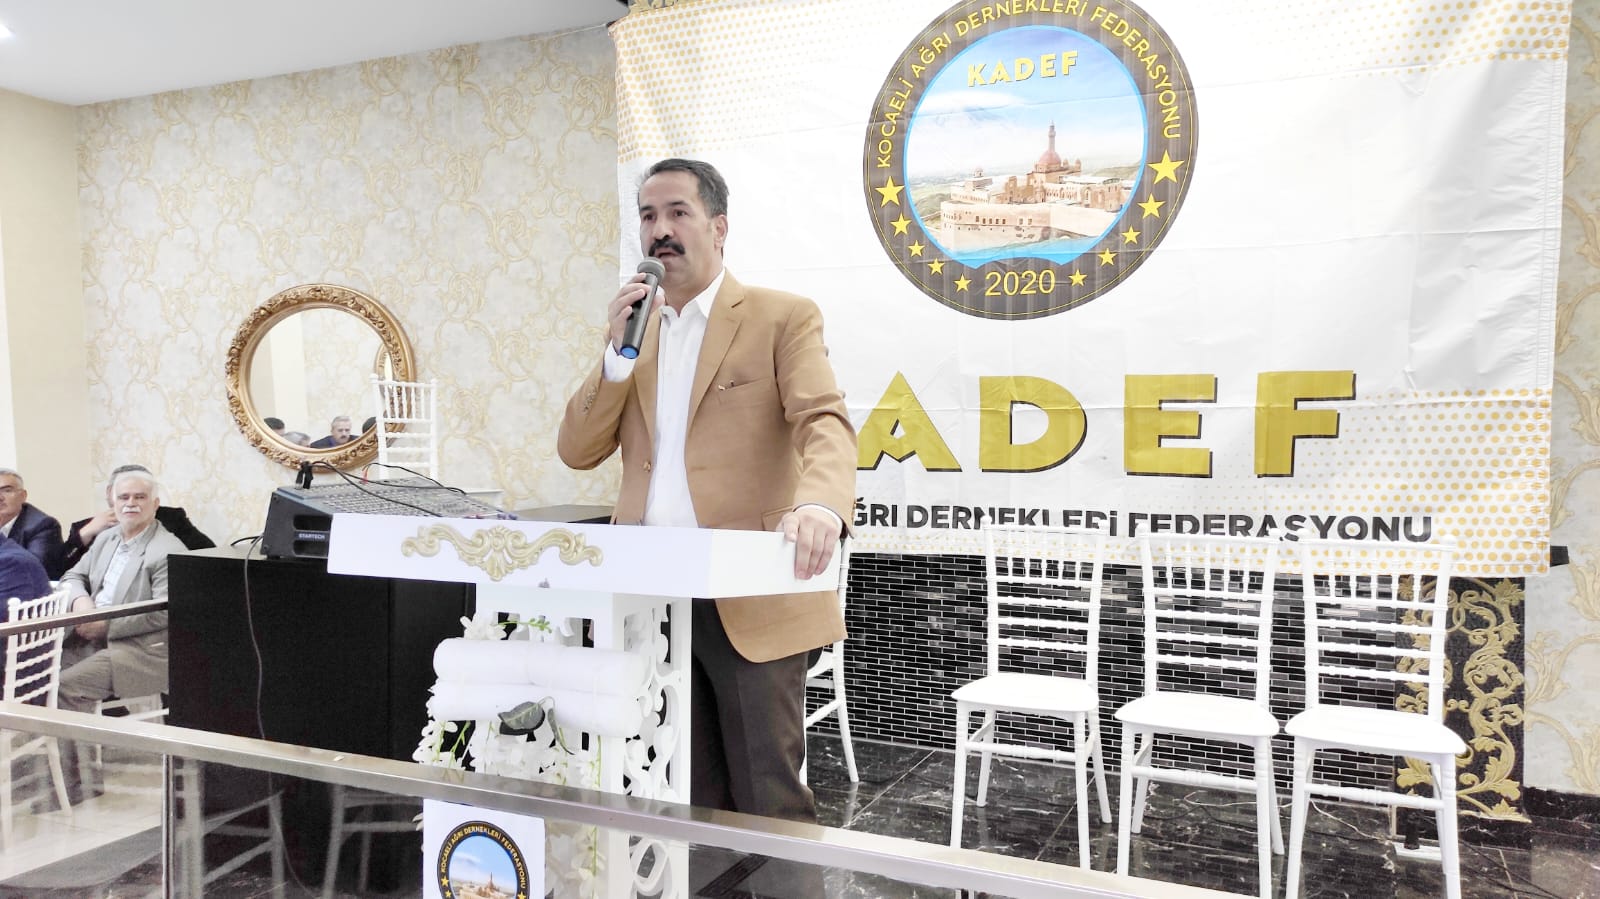 KADEF Başkanı Yıldırım hedefi işaret etti: Siyasetin her alanında ağrılılar olmalı